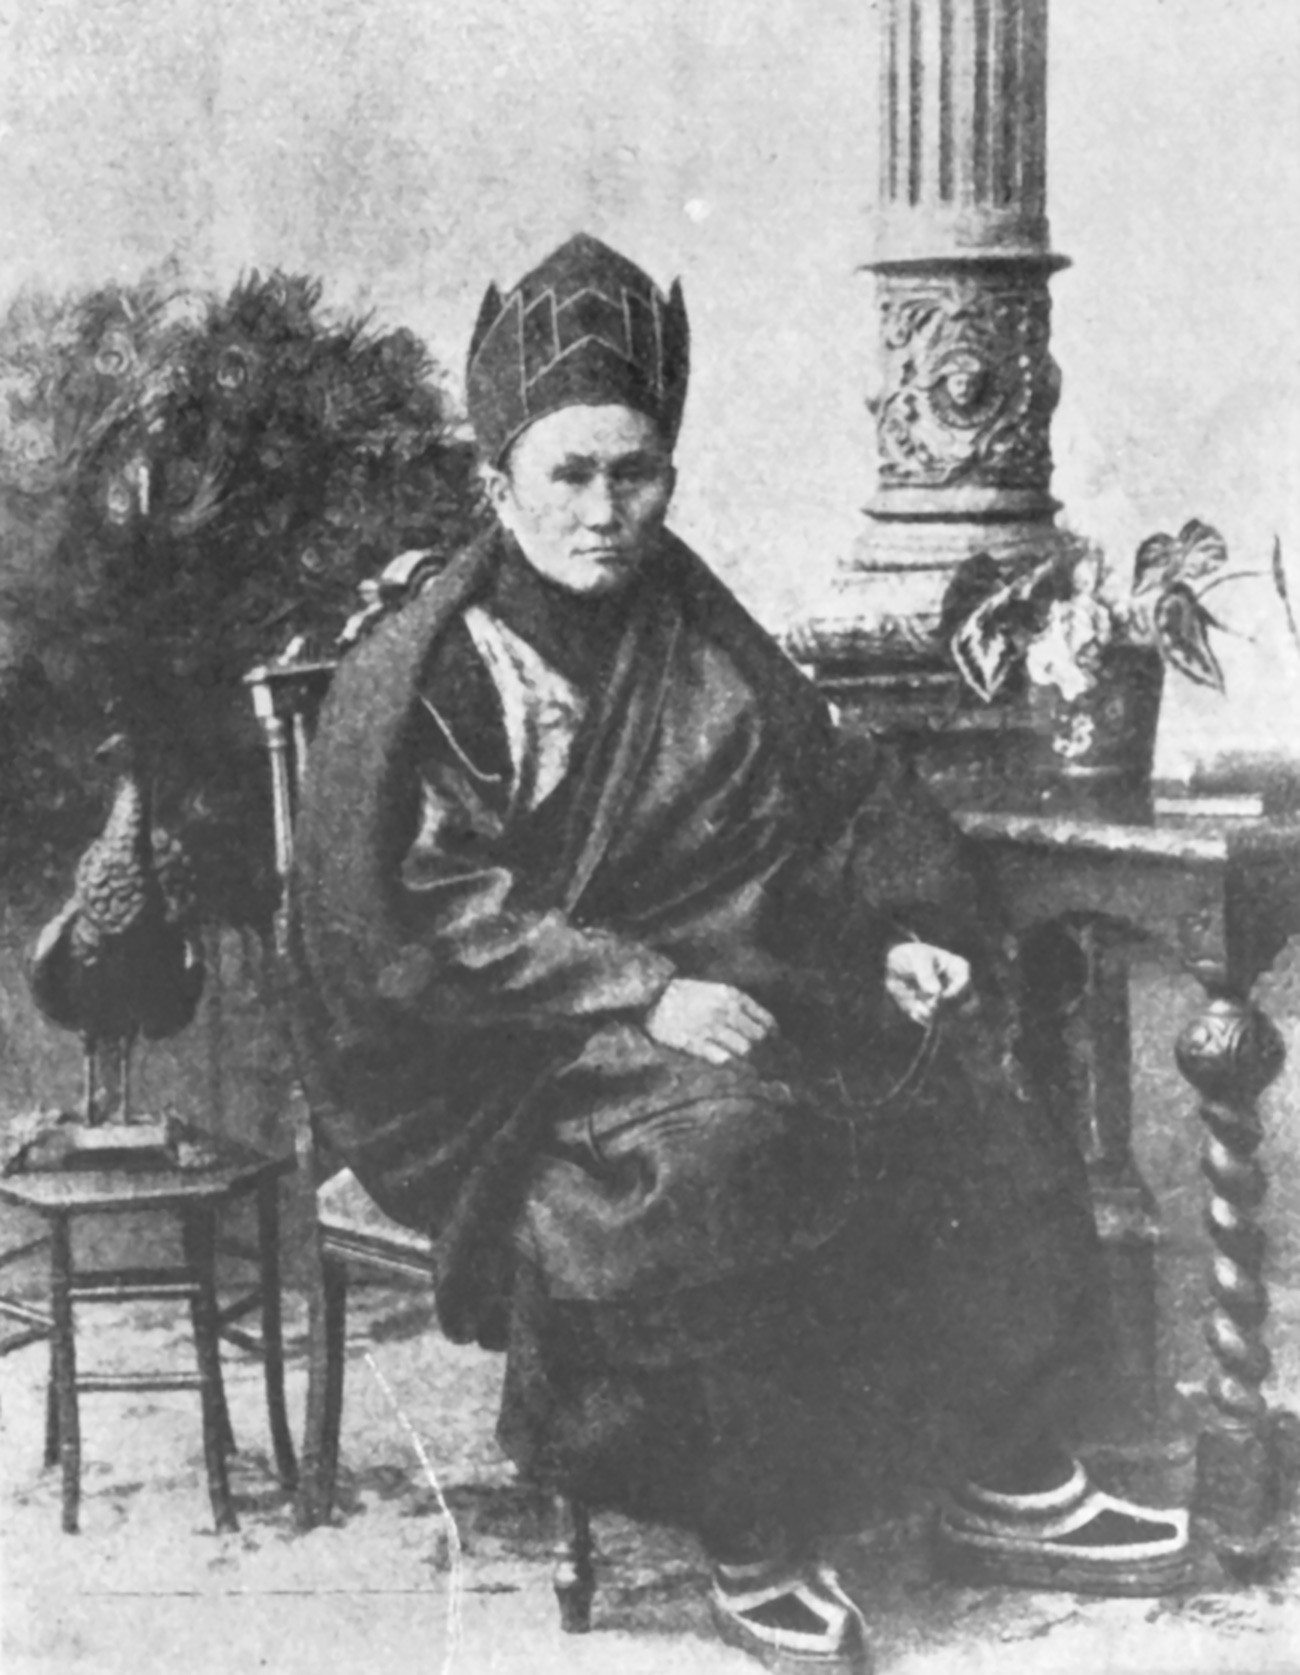 スパイか聖人か ロシアをチベットに近付けた仏僧 ロシア ビヨンド